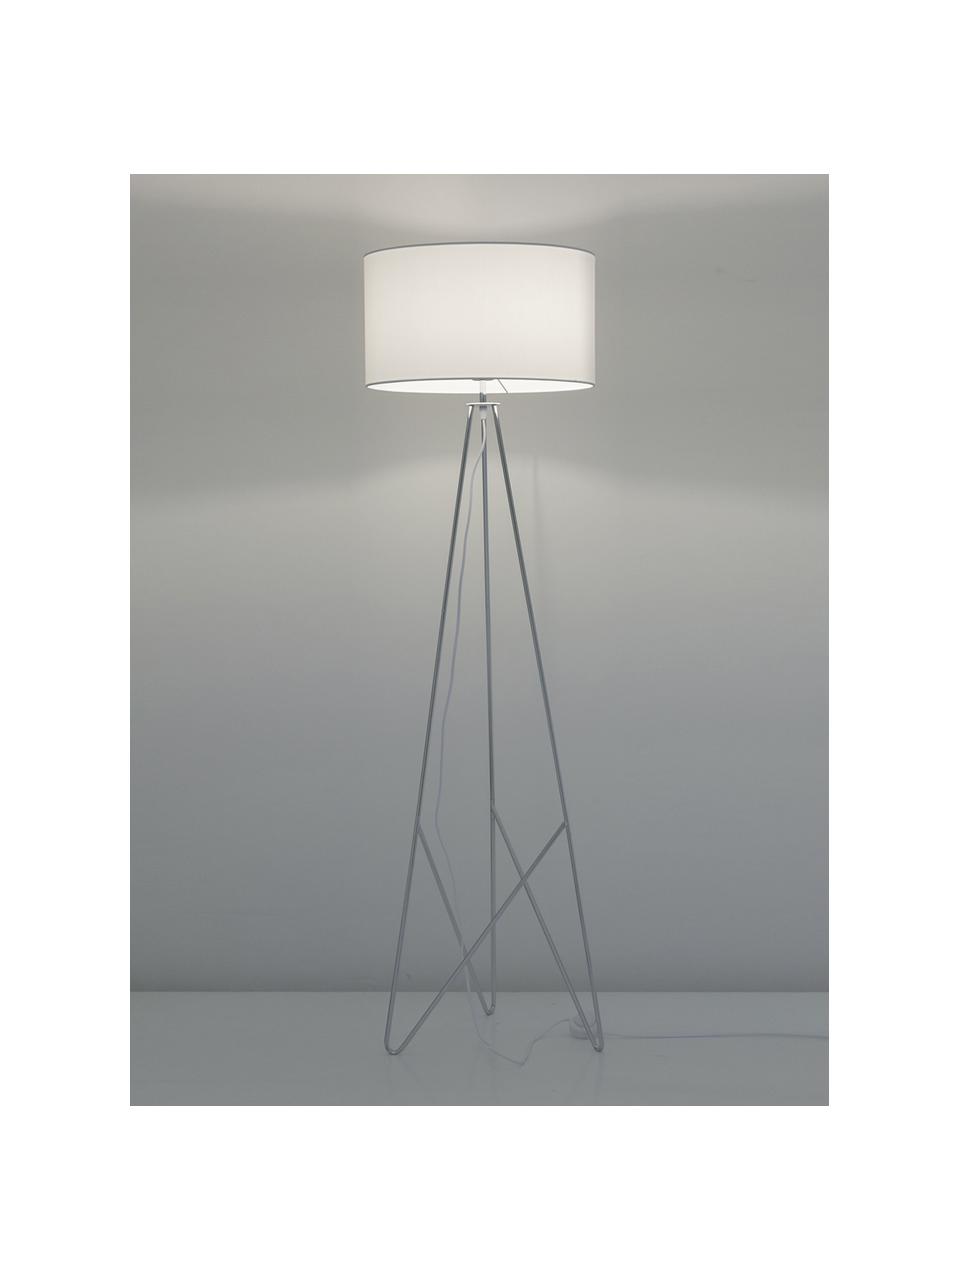 Stehlampe Jessica in Weiß-Silber, Lampenschirm: Textil, Lampenfuß: Metall, verchromt, Weiß, Chrom, Ø 45 x H 155 cm